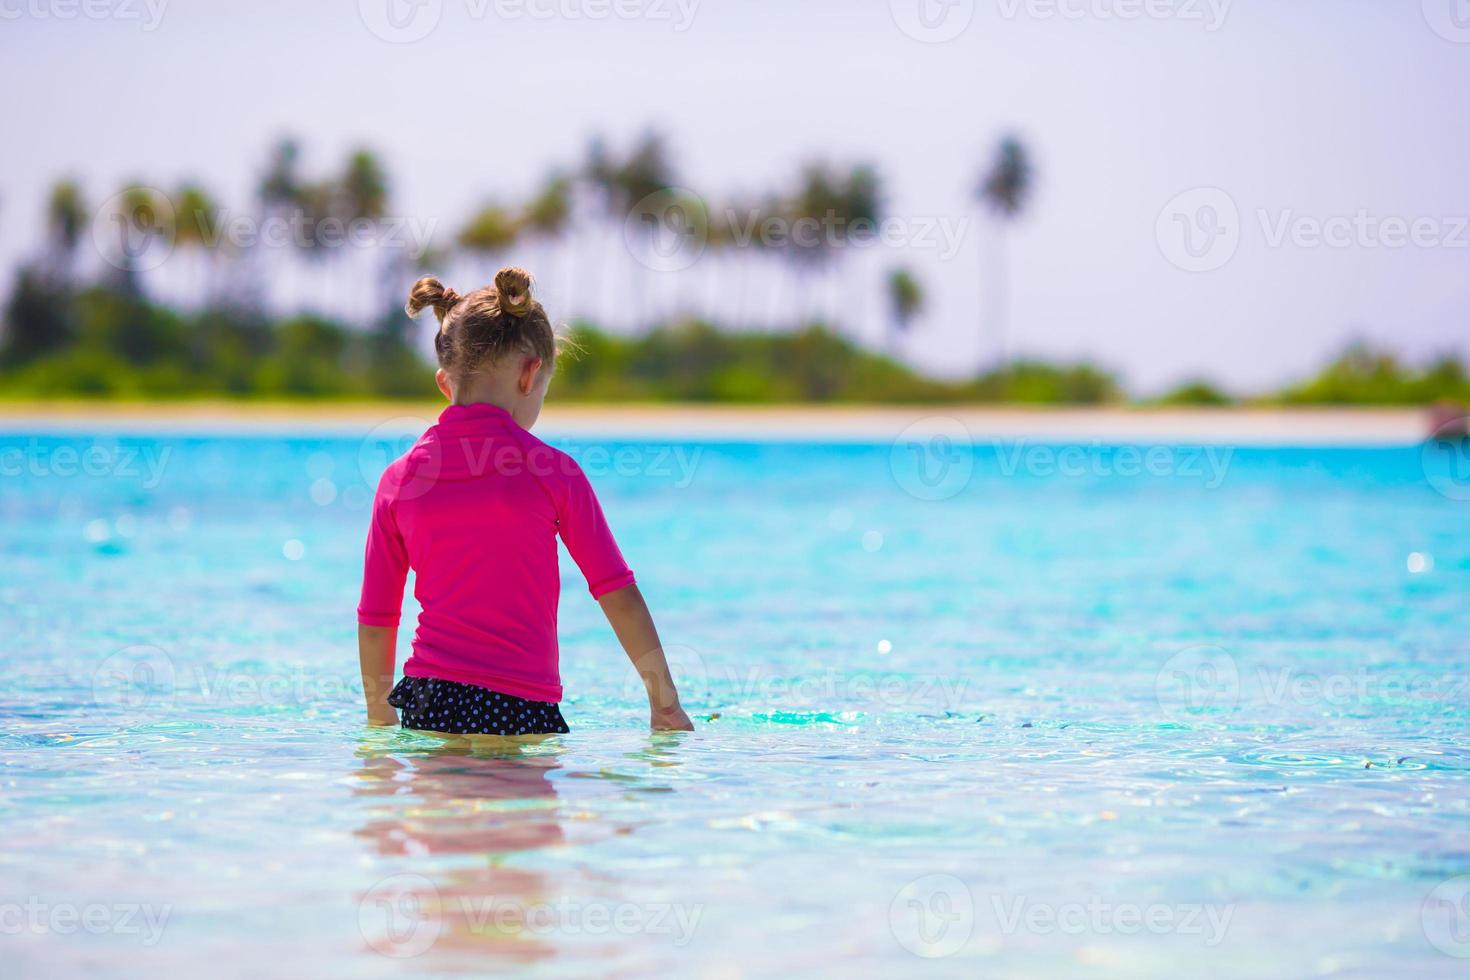 Adorable niña en la playa durante las vacaciones de verano foto